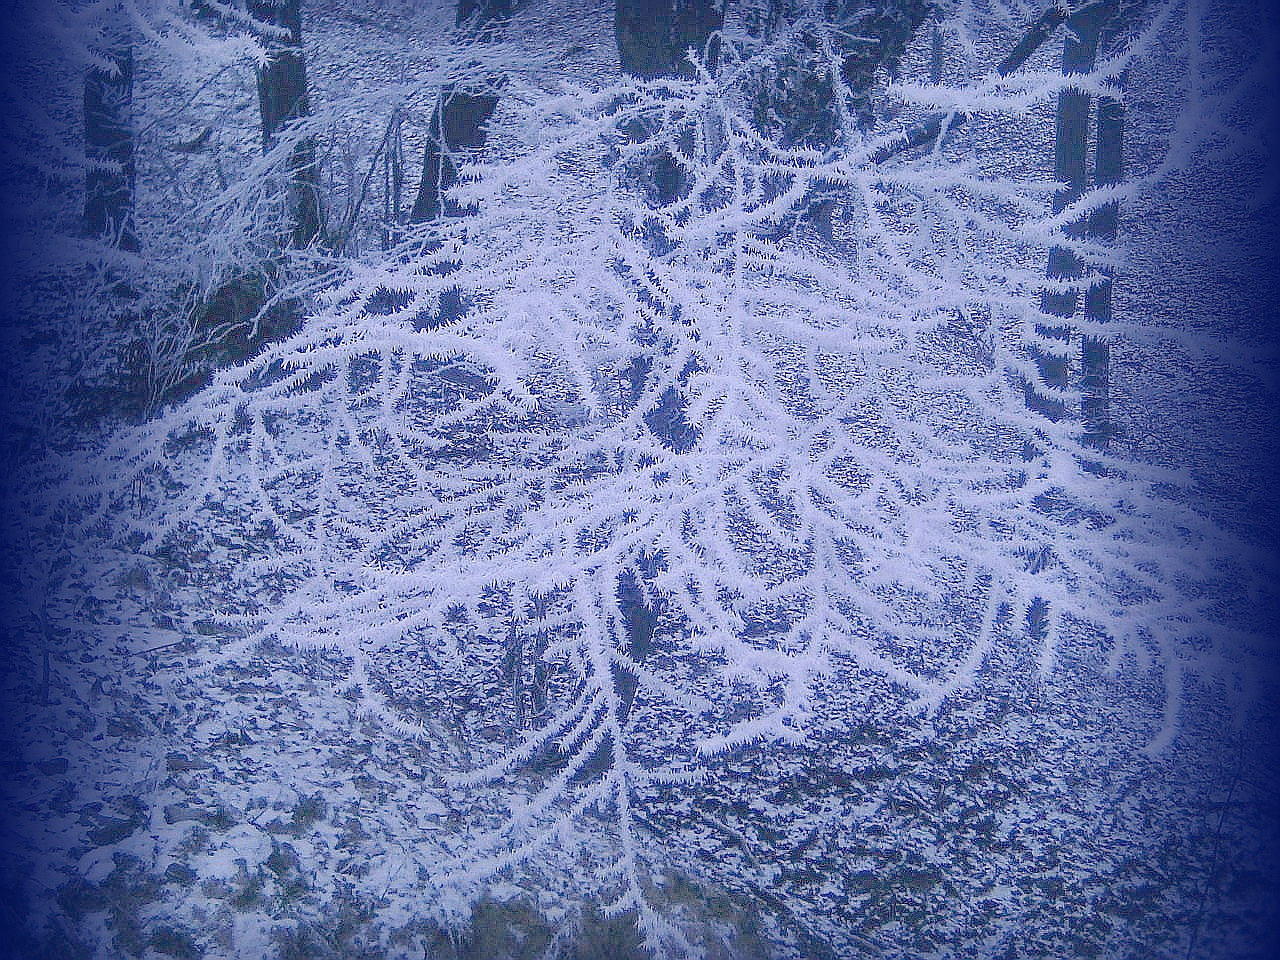 téli képek, zúzmara a téli erdőben